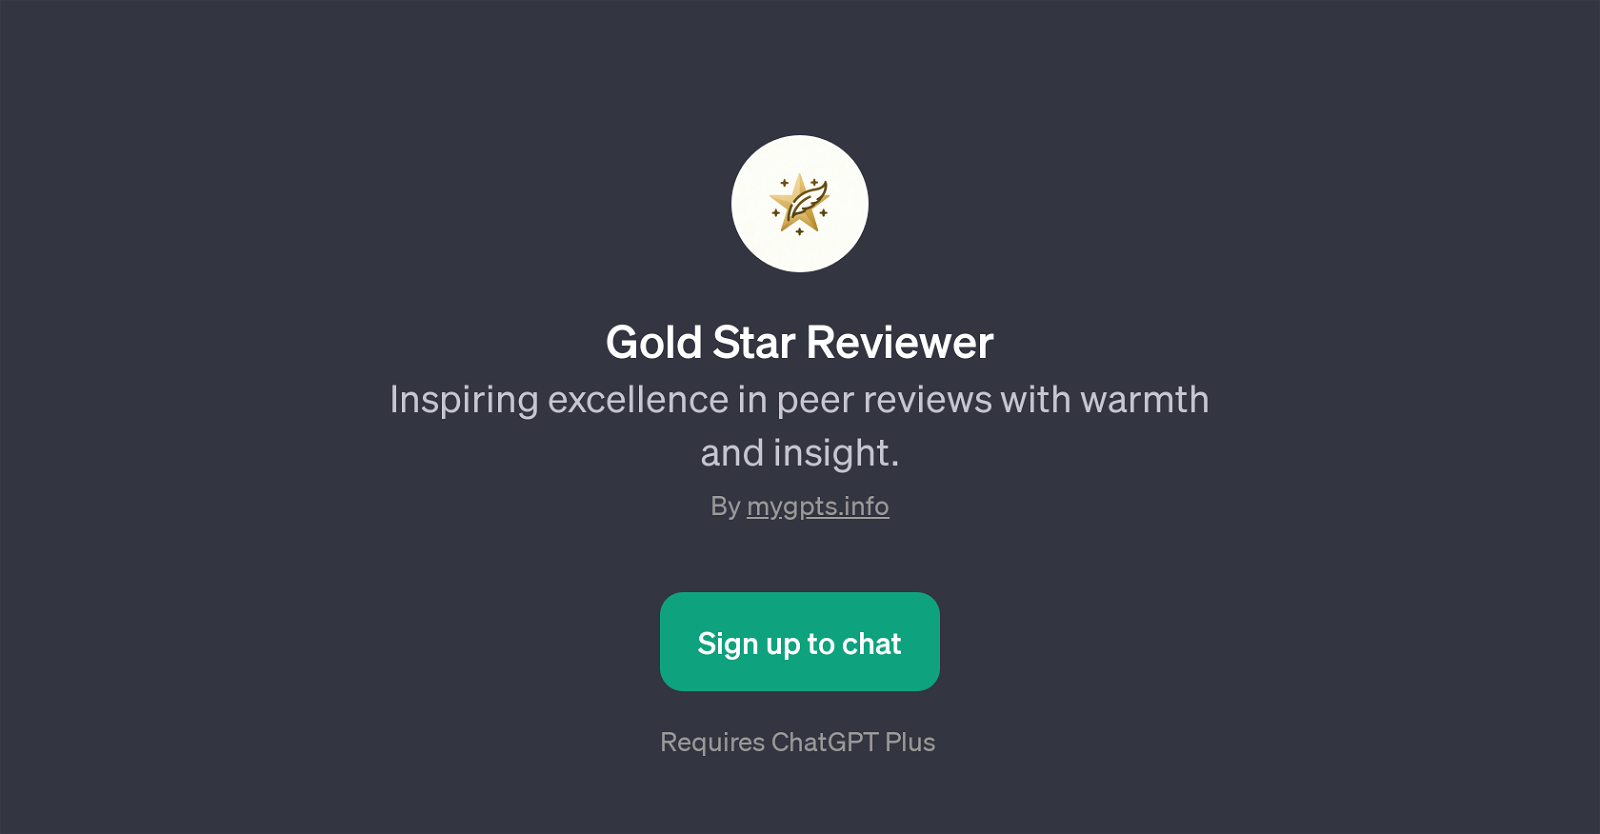 Gold Star Reviewer website